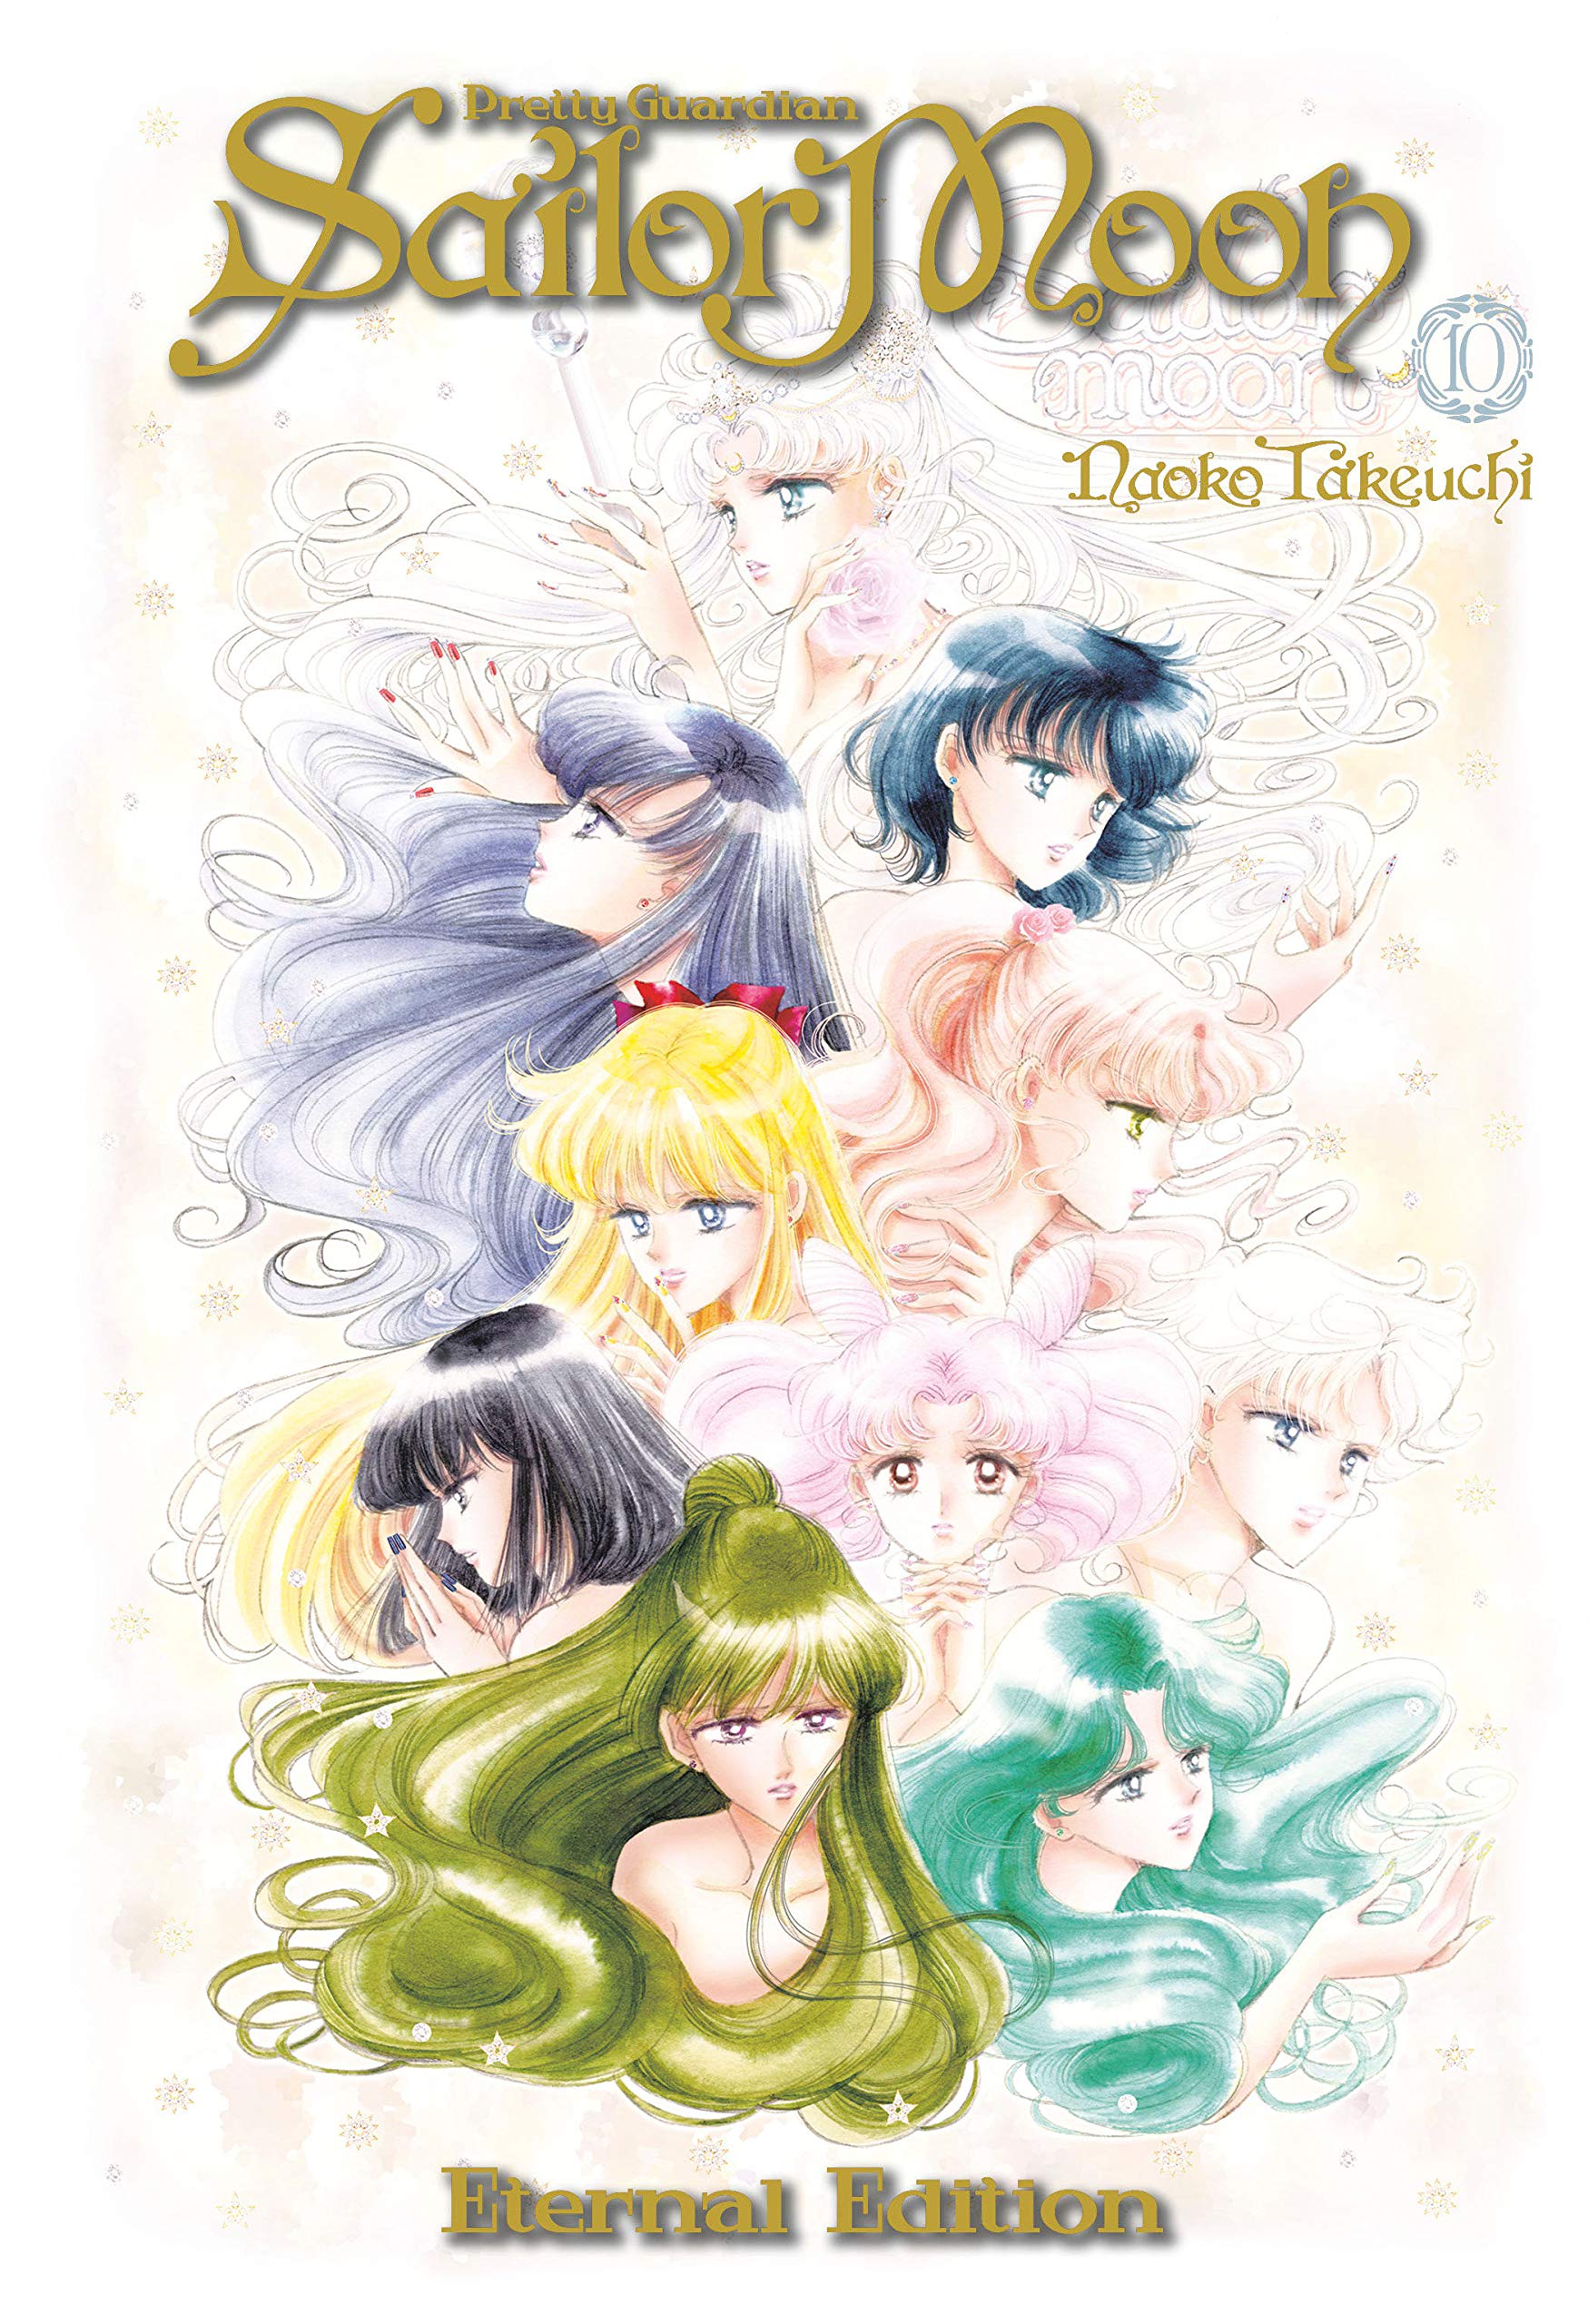 美少女战士 10 完全版 平装漫画 英文原版 Sailor Moon Eternal Edition 10 武内直子 Naoko Takeuchi 中图